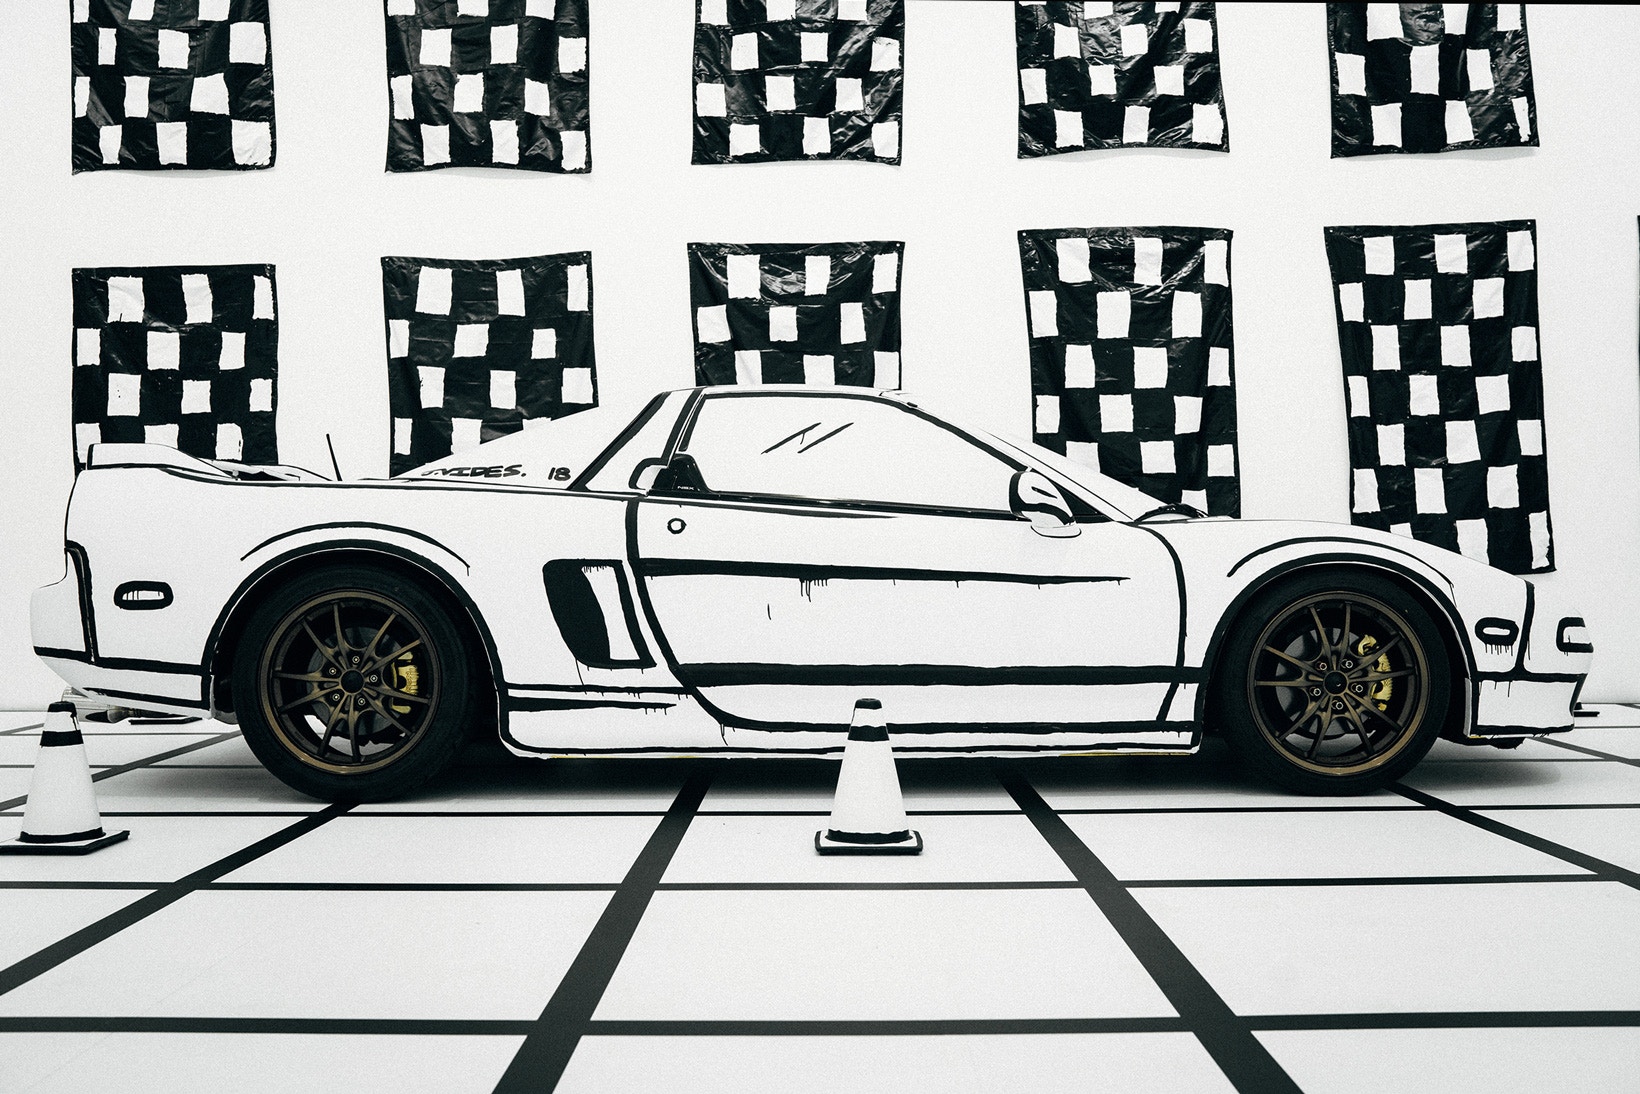 Vue de profil de l'Acura NSX de Joshua Vides